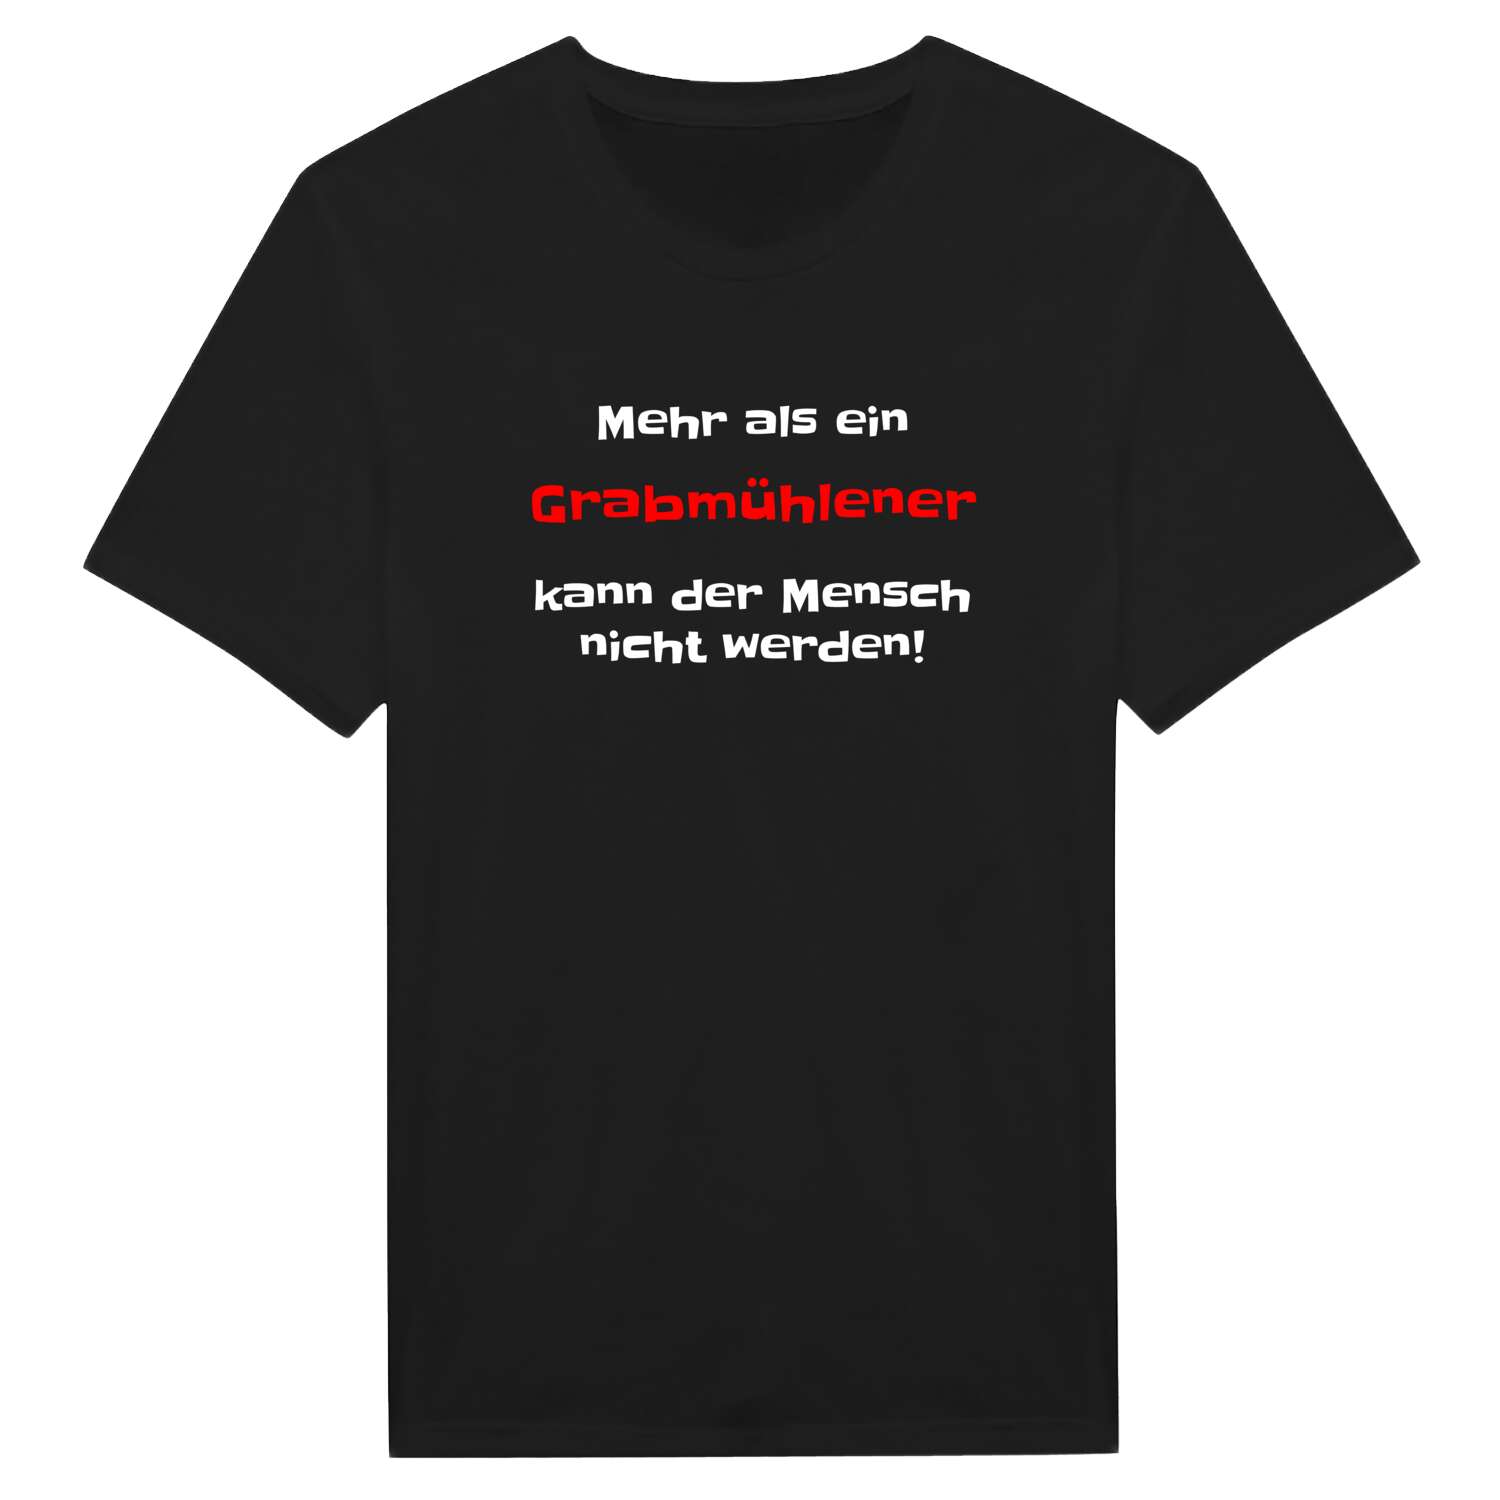 Grabmühle T-Shirt »Mehr als ein«